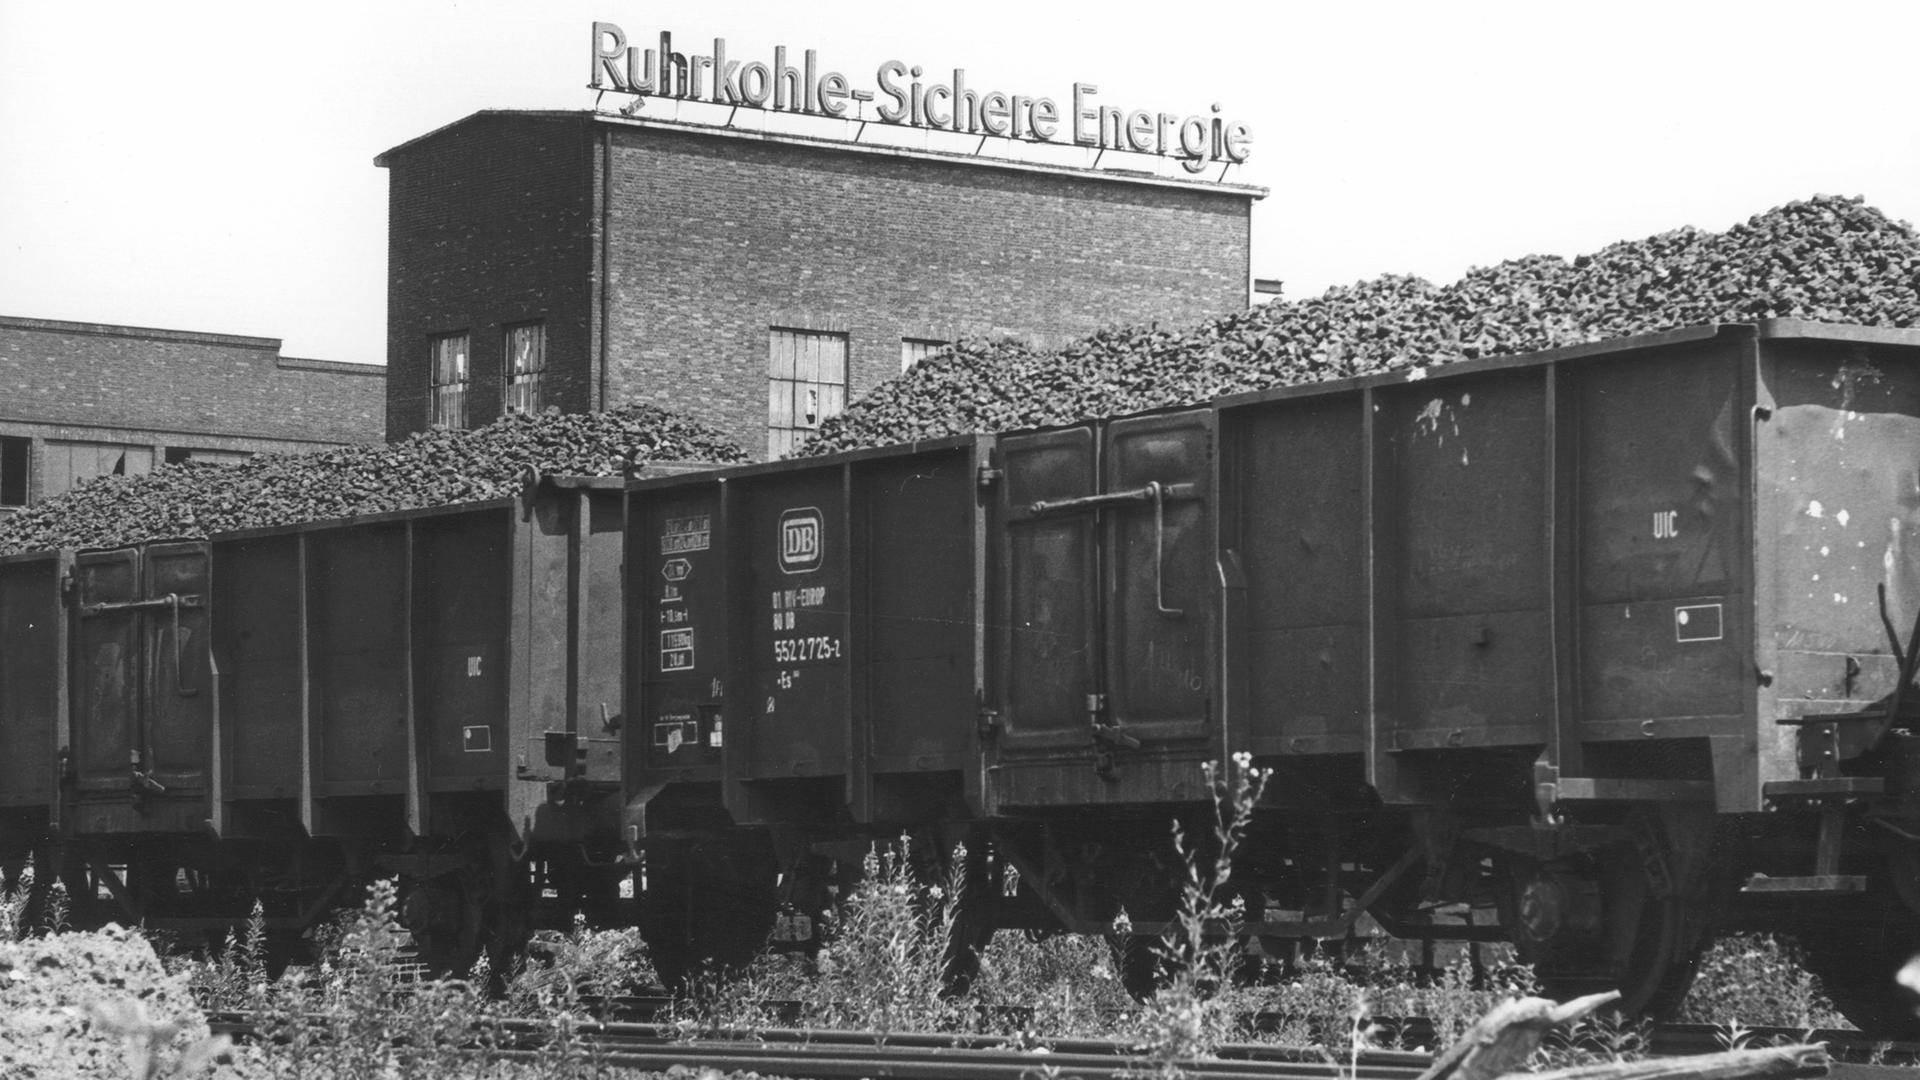 Kohlewagons vor einer Fabrik mit dem Werbeslogan: "Ruhrkohle, Sichere Energie". Bonn, 1979.